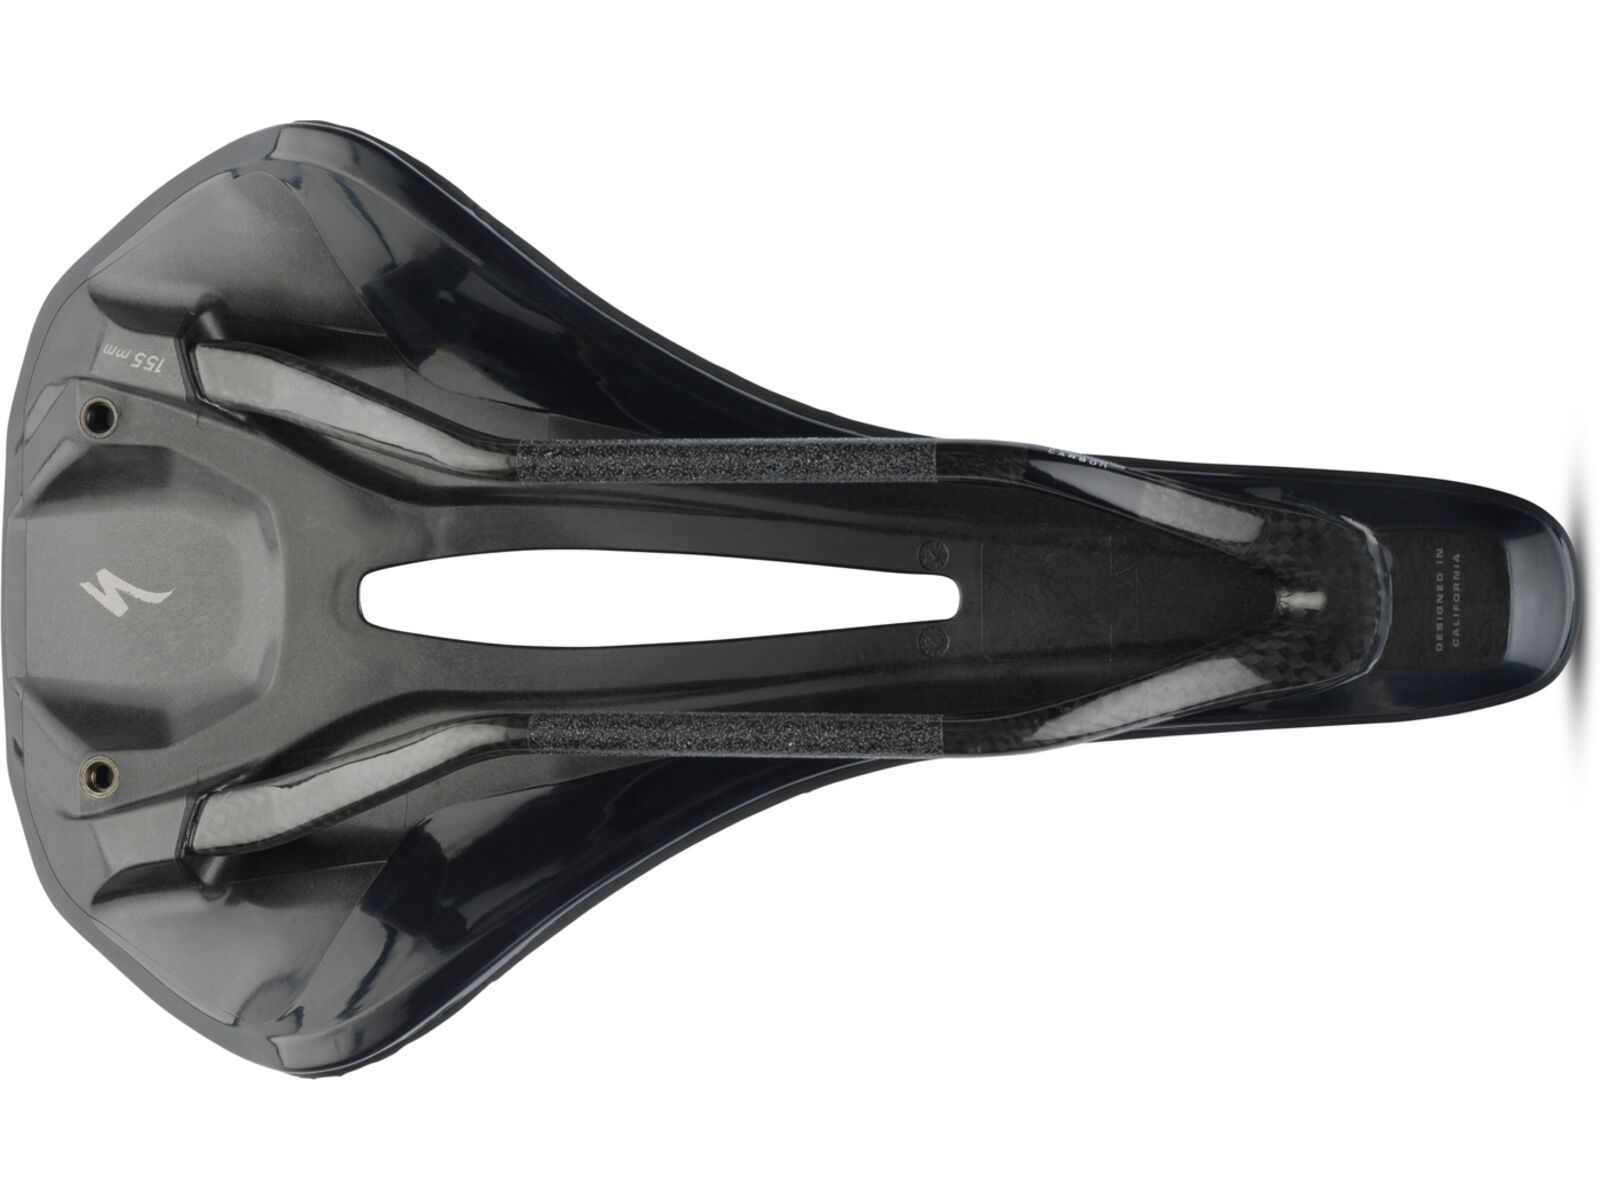 Specialized Phenom Pro Elaston Saddle - 143 mm, black | Bild 4